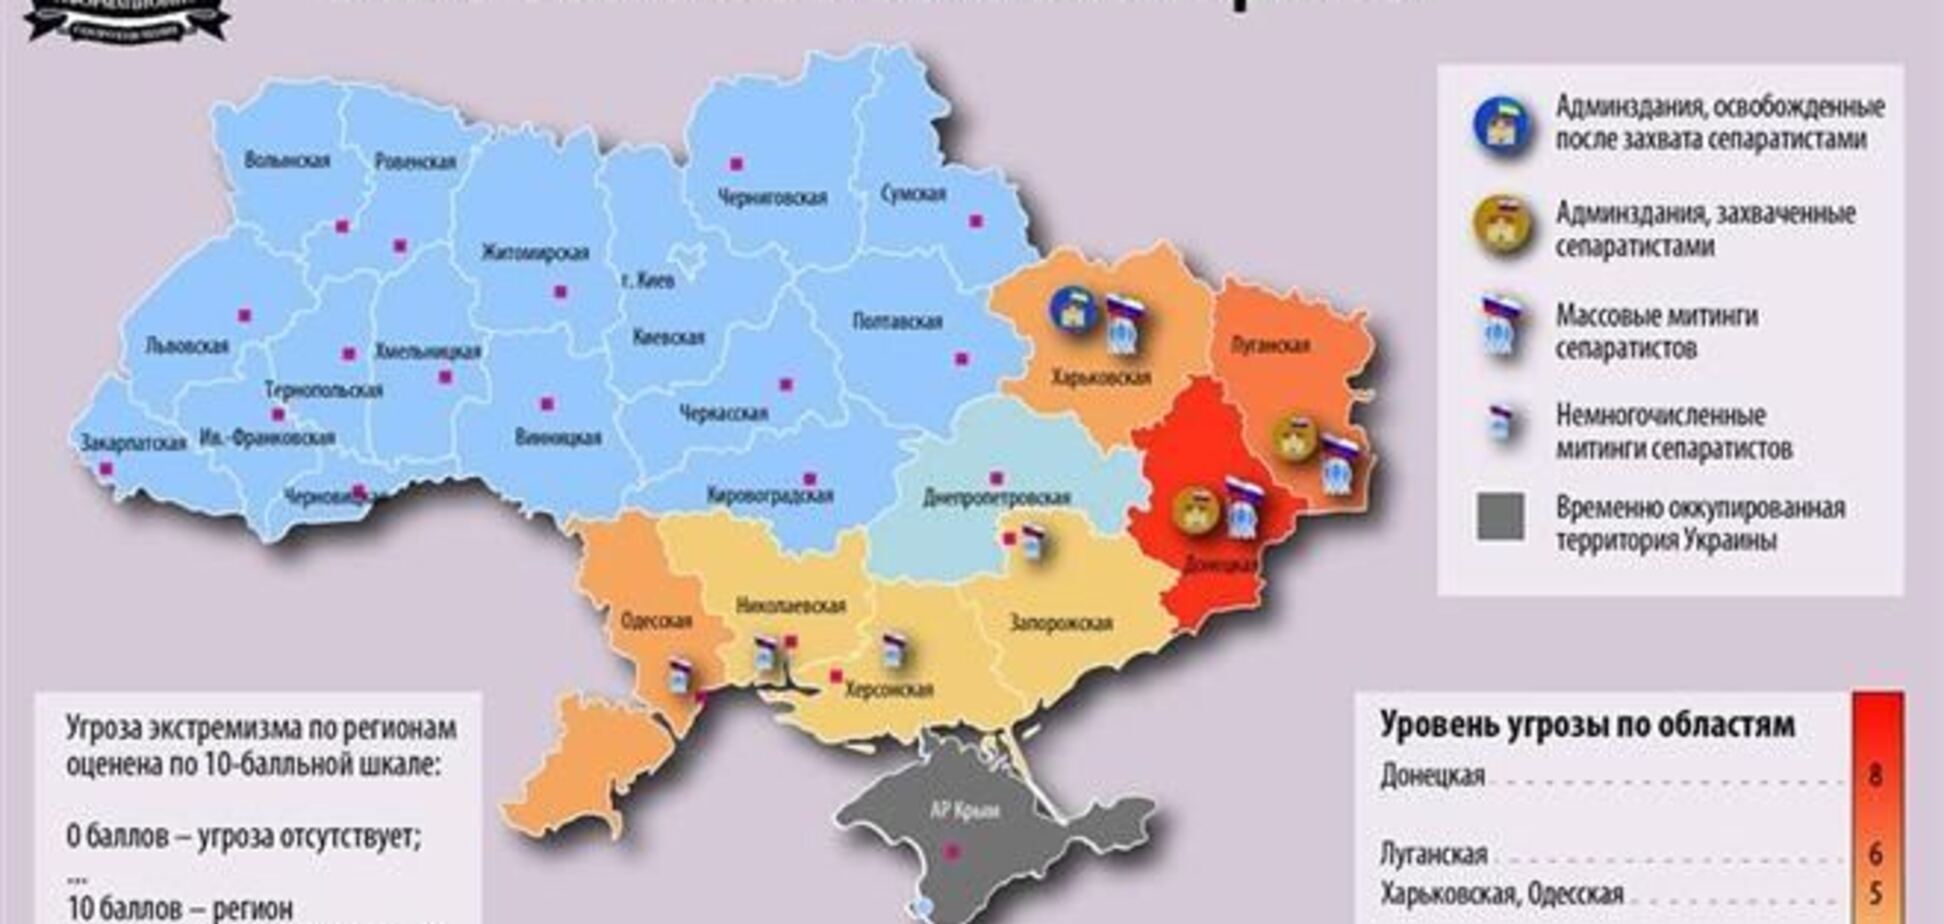 На Донетчине - самая высокая угроза экстремизма, на Днепропетровщине – самая низкая. Инфографика